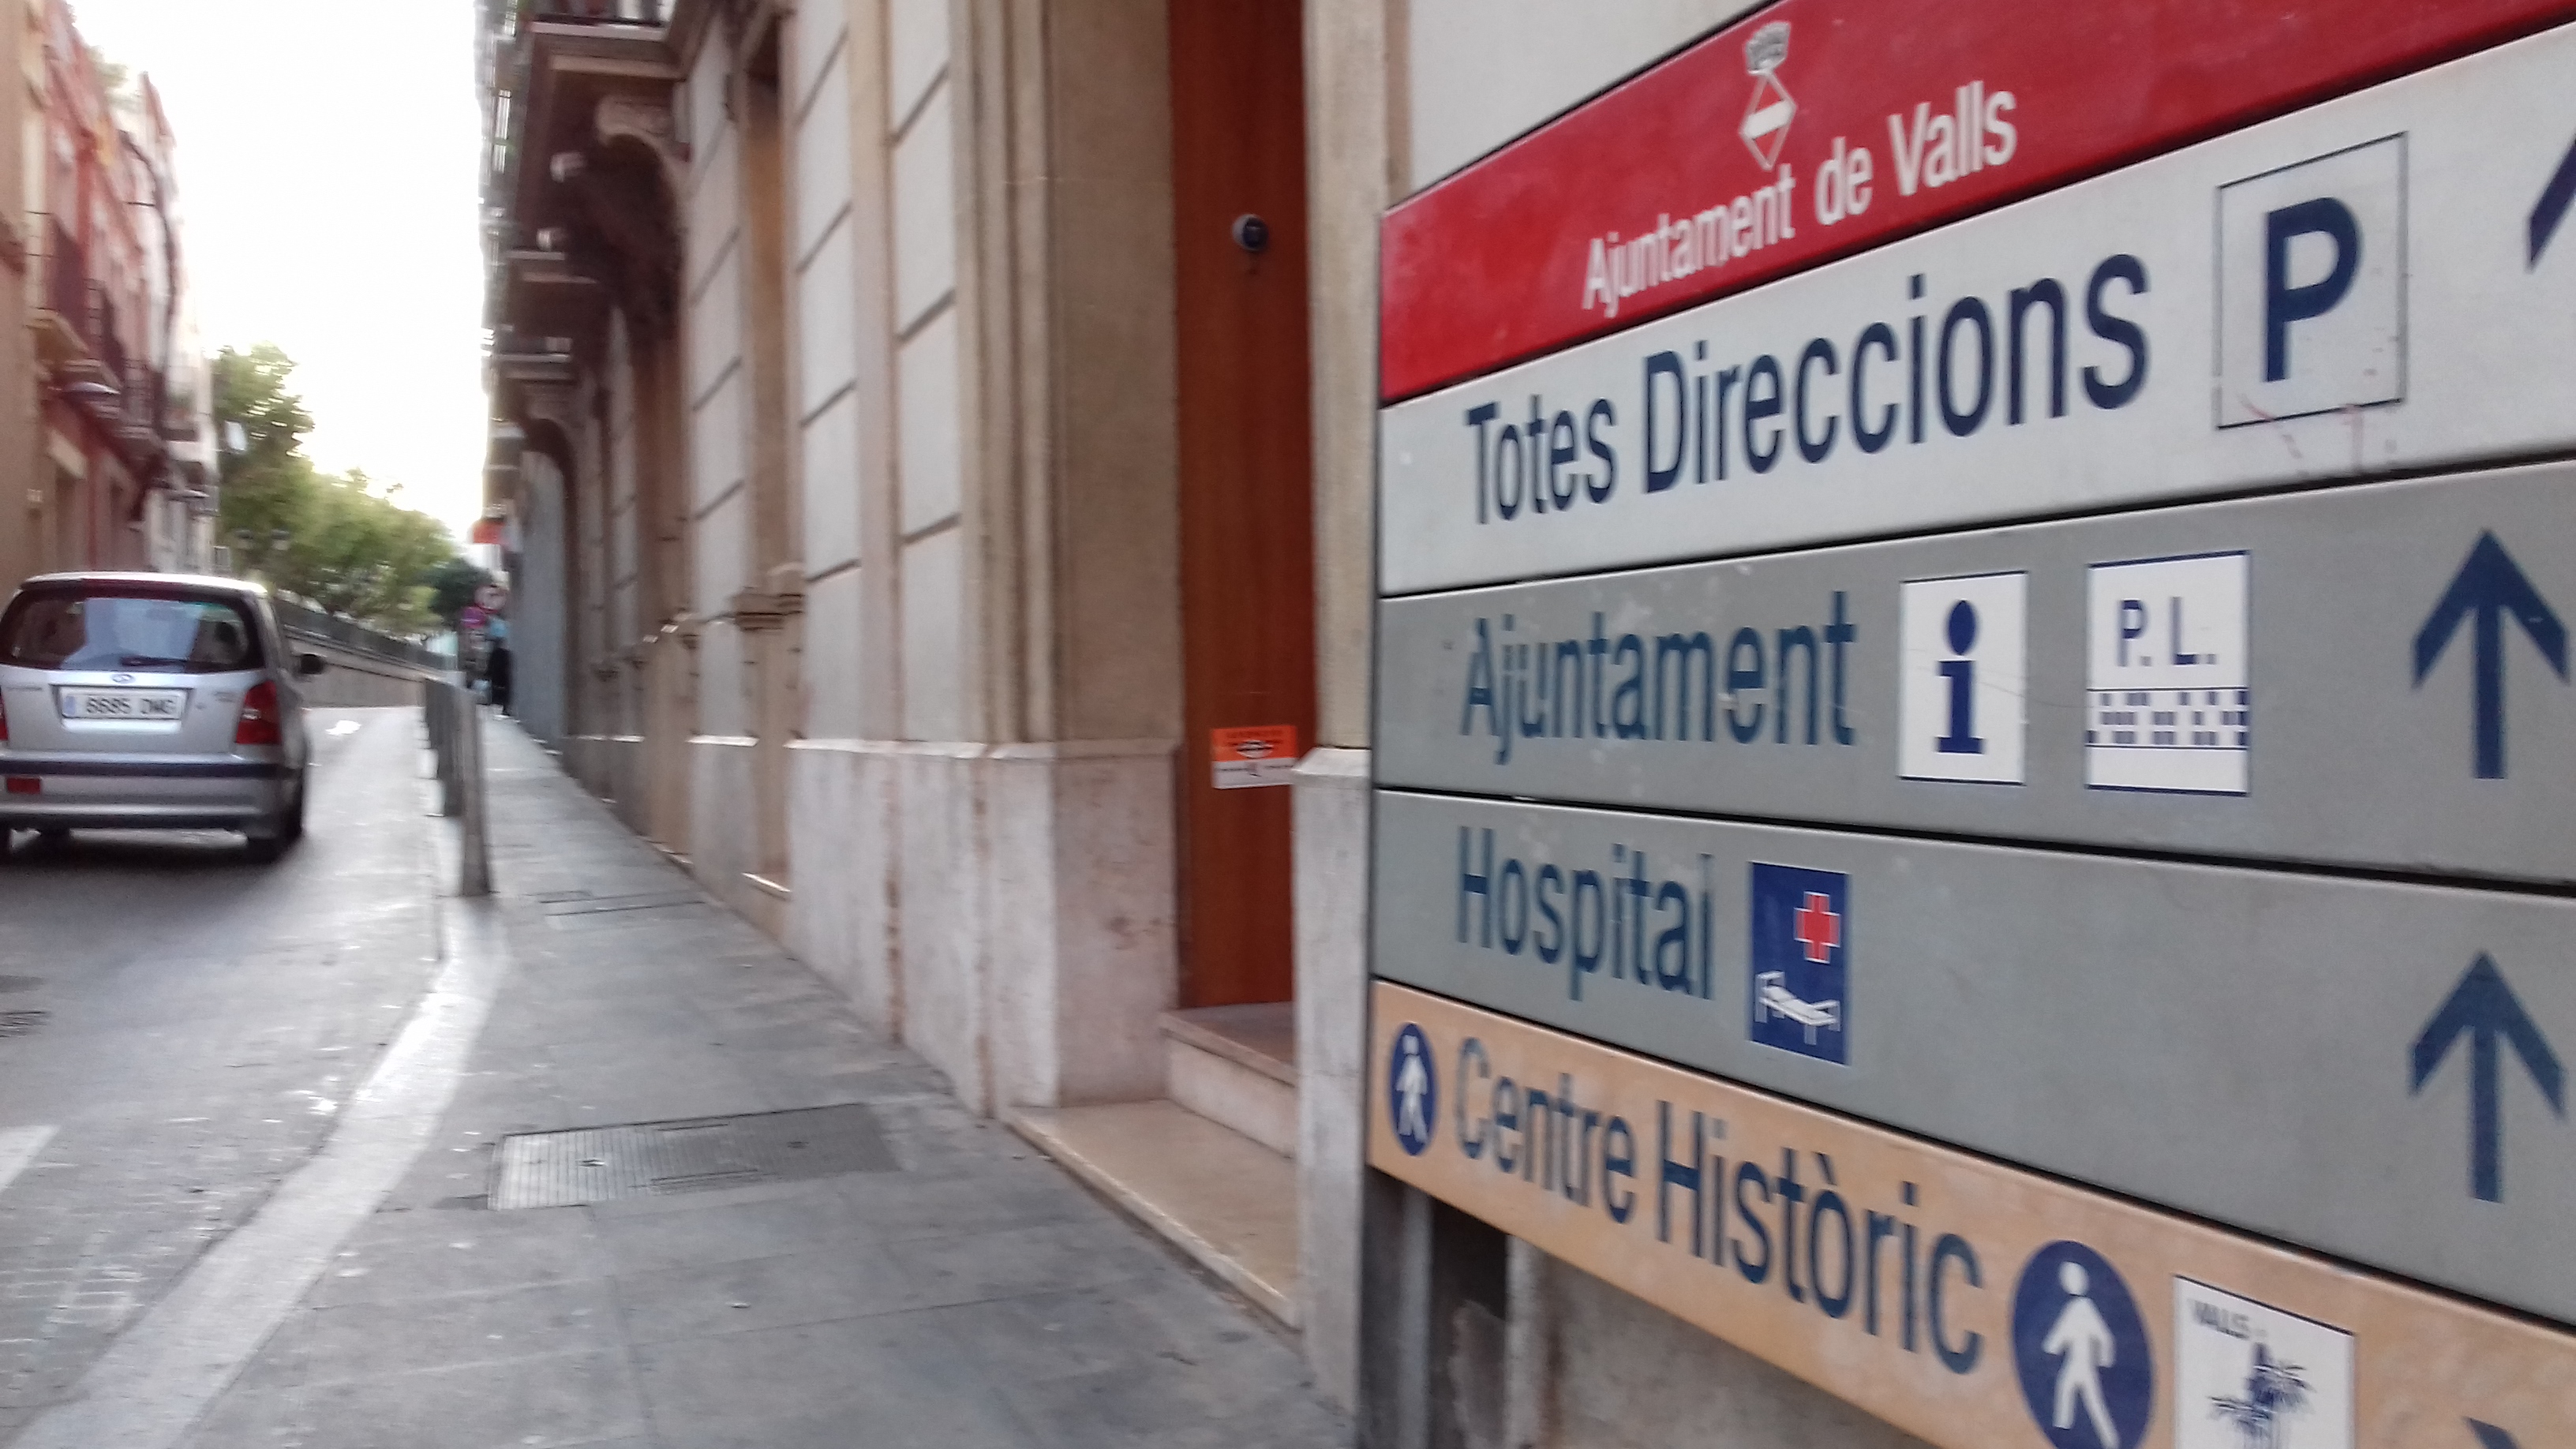 Valls impulsa inversions en obres en els propers mesos per 6 milions d'euros